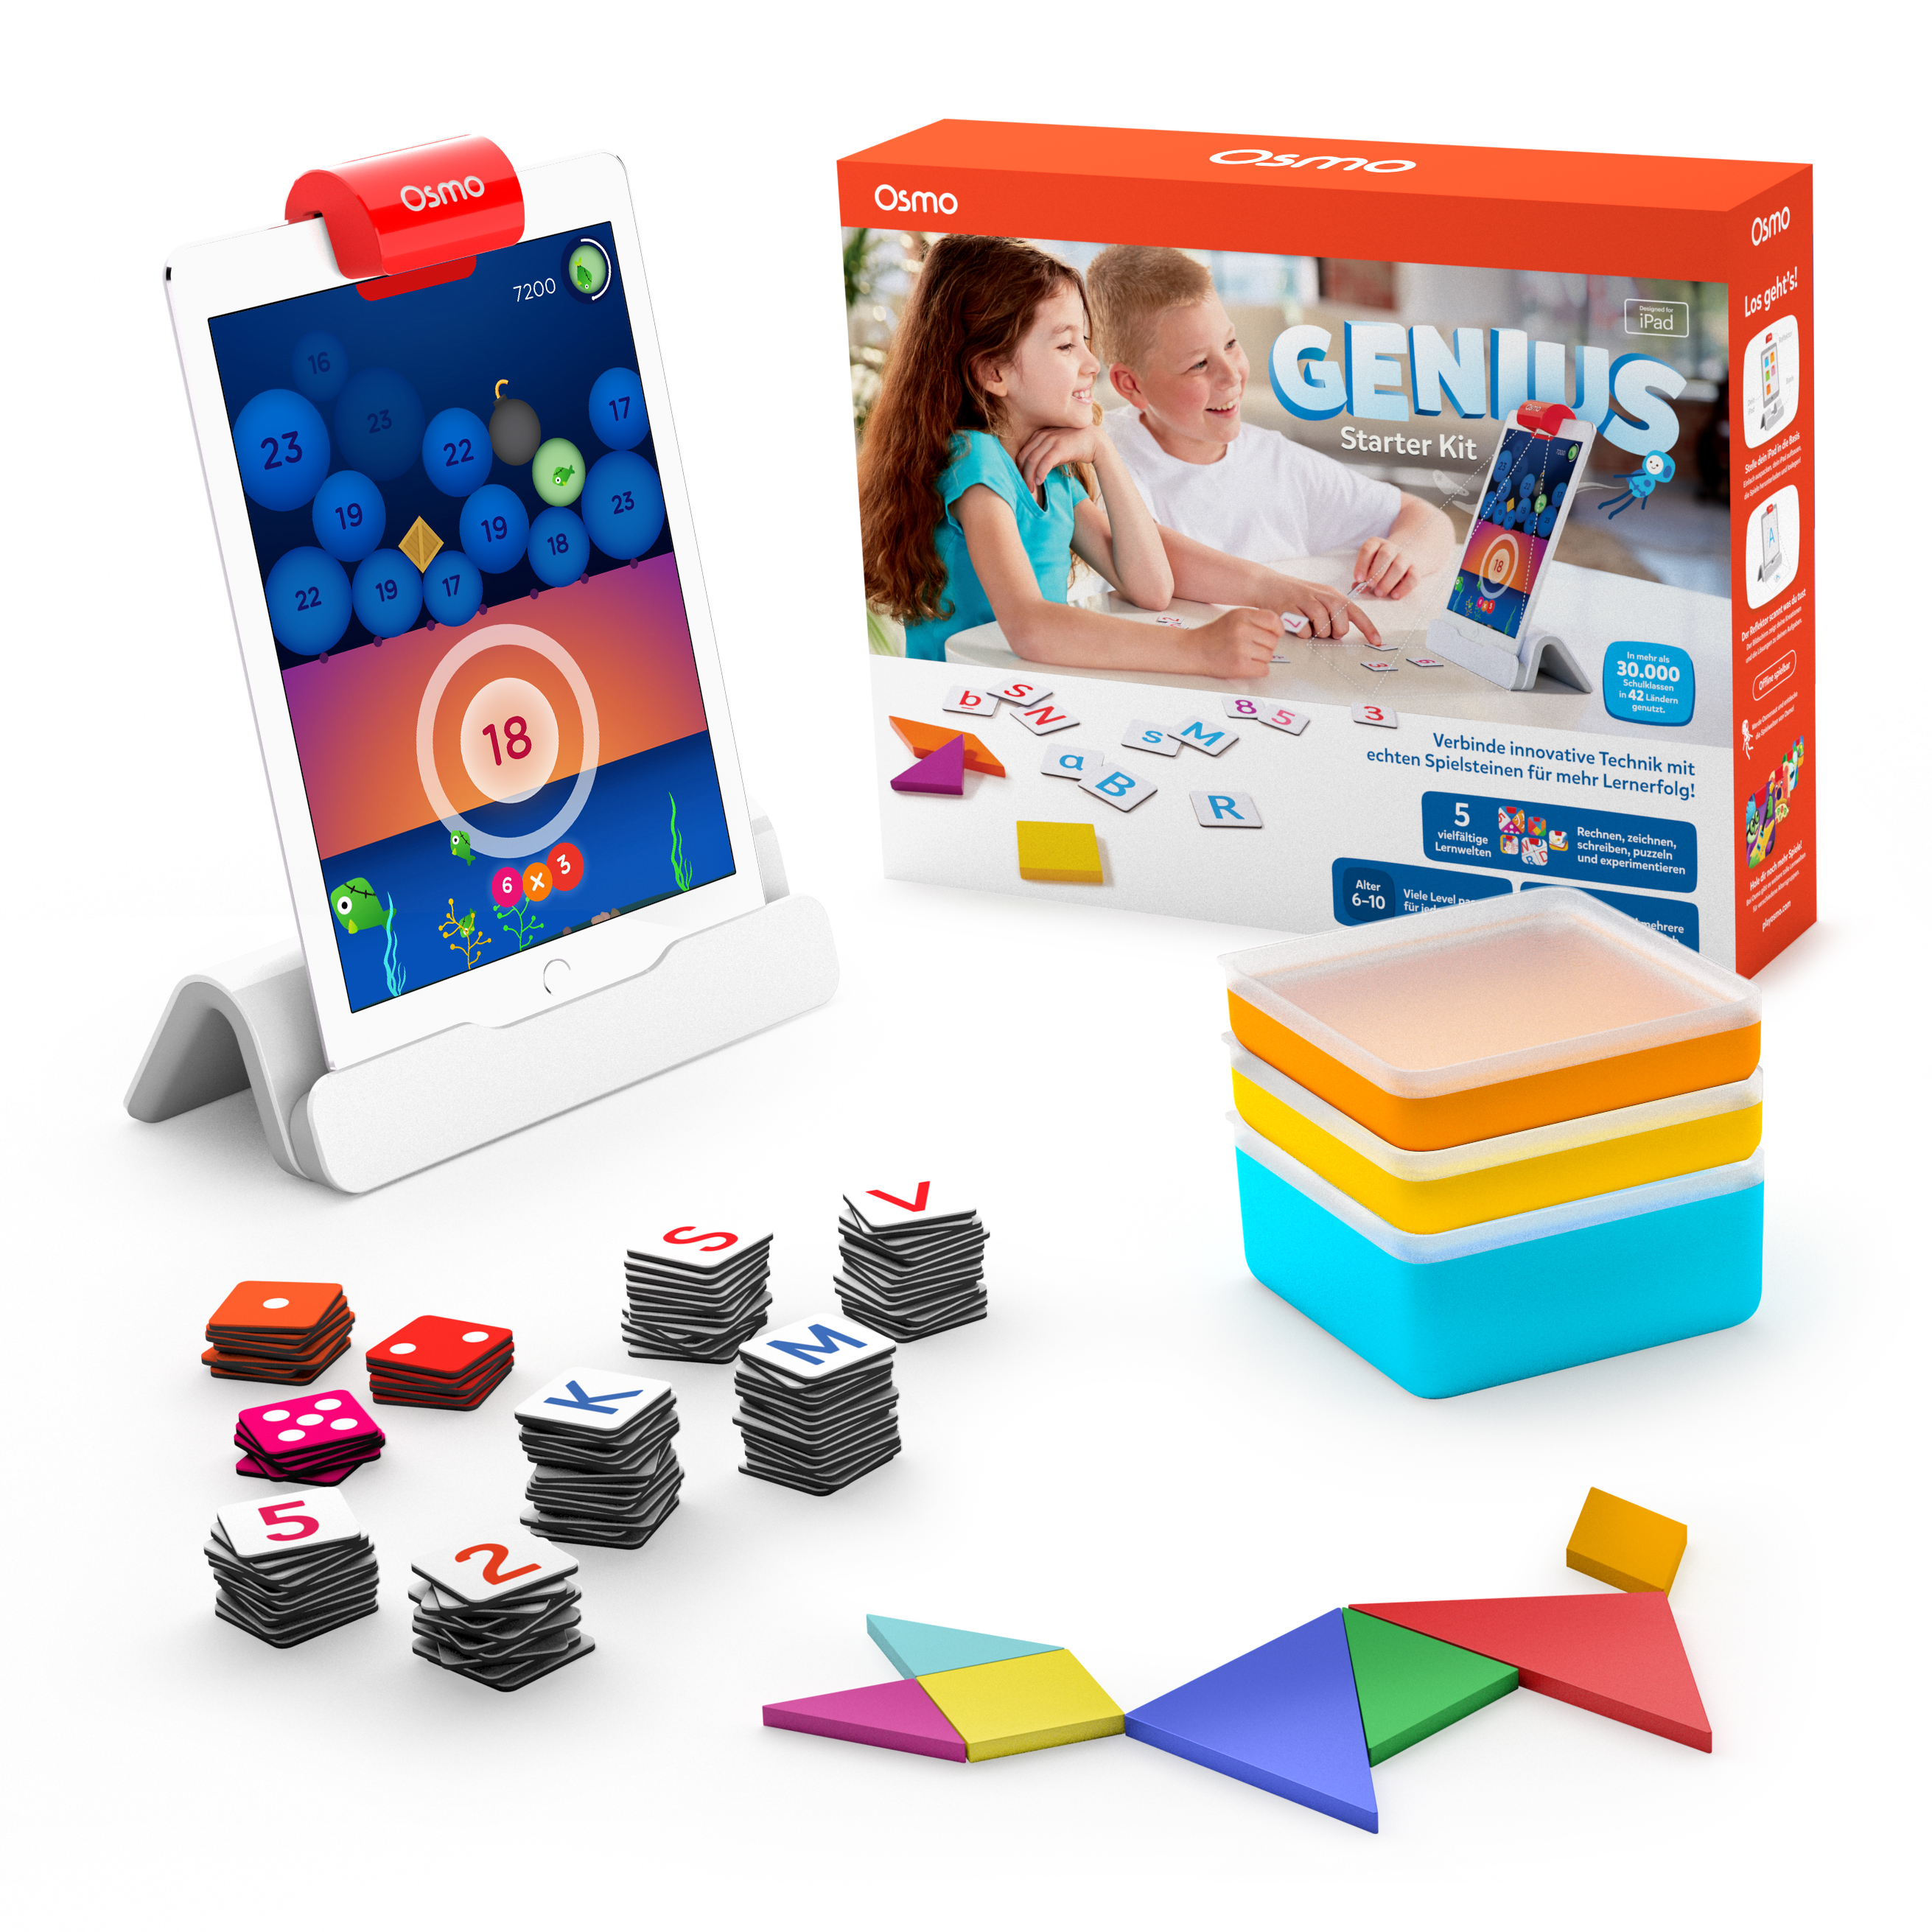 Osmo Genius Kit per iPad incl. Osmo-Basis